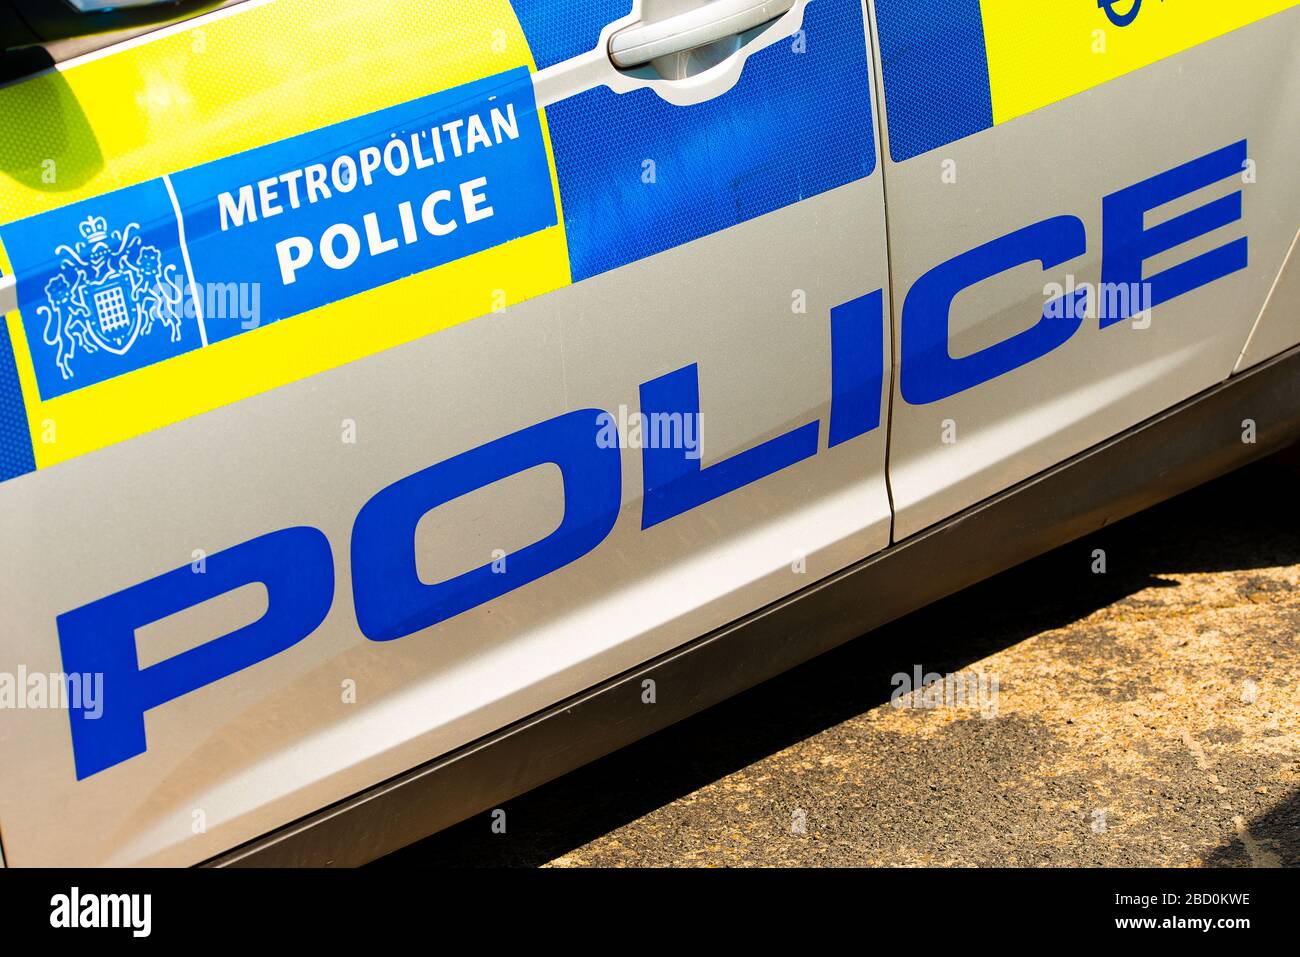 Angewinkelte Ansicht des Metropolitan Police Hinweisschildes an der Seitentür des Schnelleingreif-Patrouillenwagens, das mit blau und gelb überzogen ist. Stockfoto